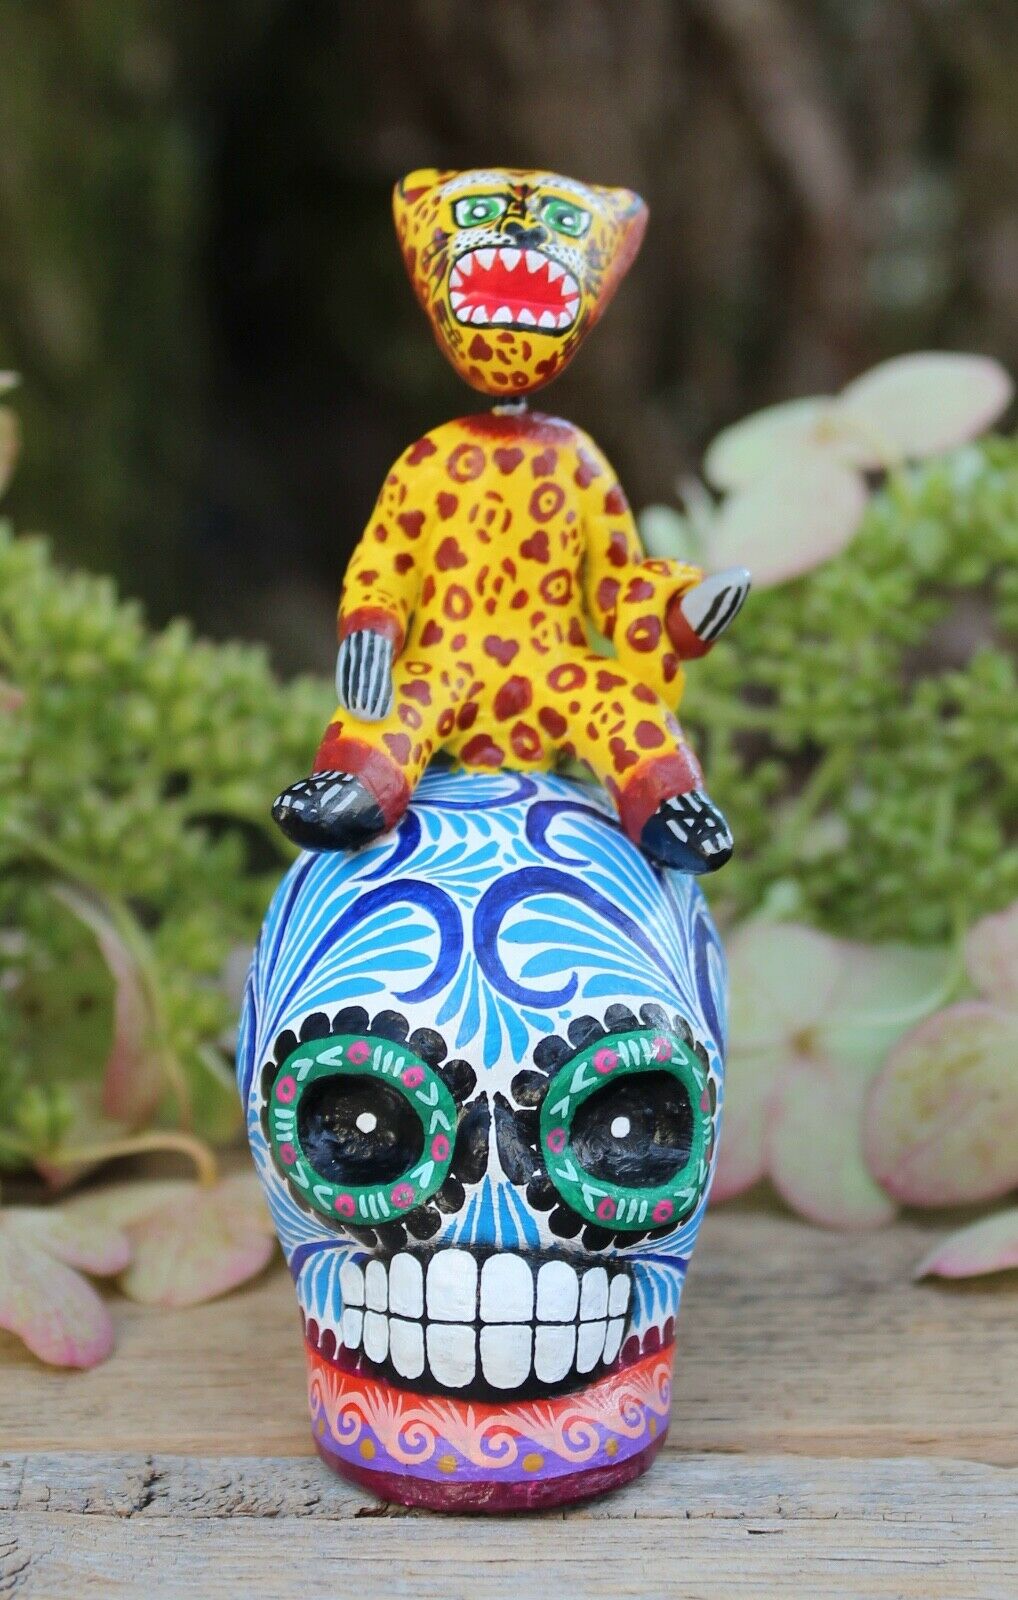 Sm Jaguar Dancer On Sugar Skull Day Of The Dead Handmade Puebla Mexican Folk Art